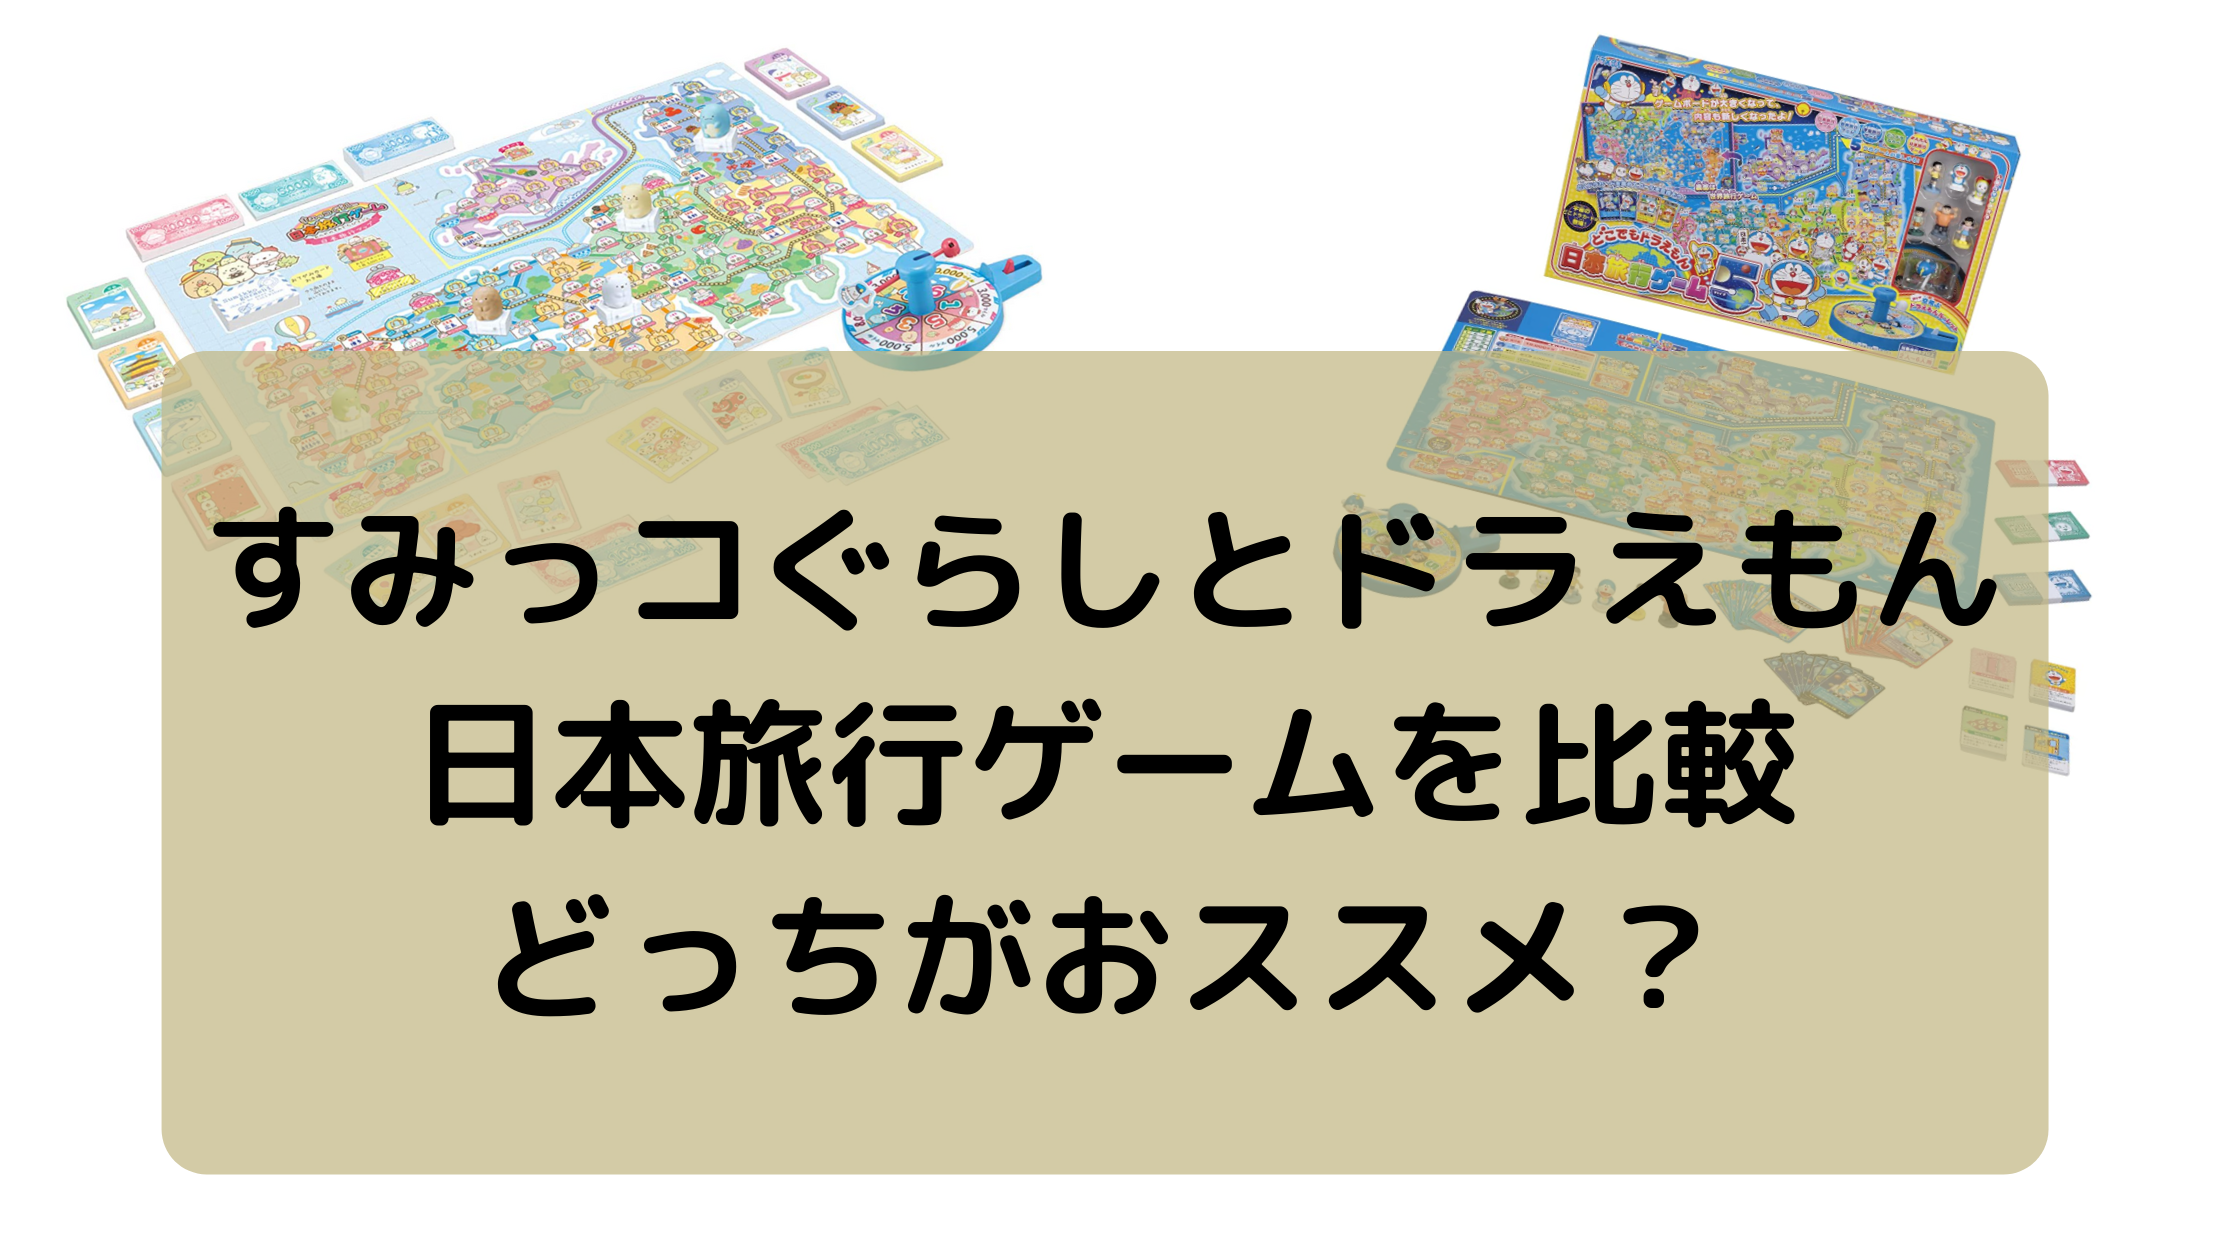 すみっコぐらしとドラえもん日本旅行ゲームを比較してみました。どっちがおススメ？ | 子どものお気に入り